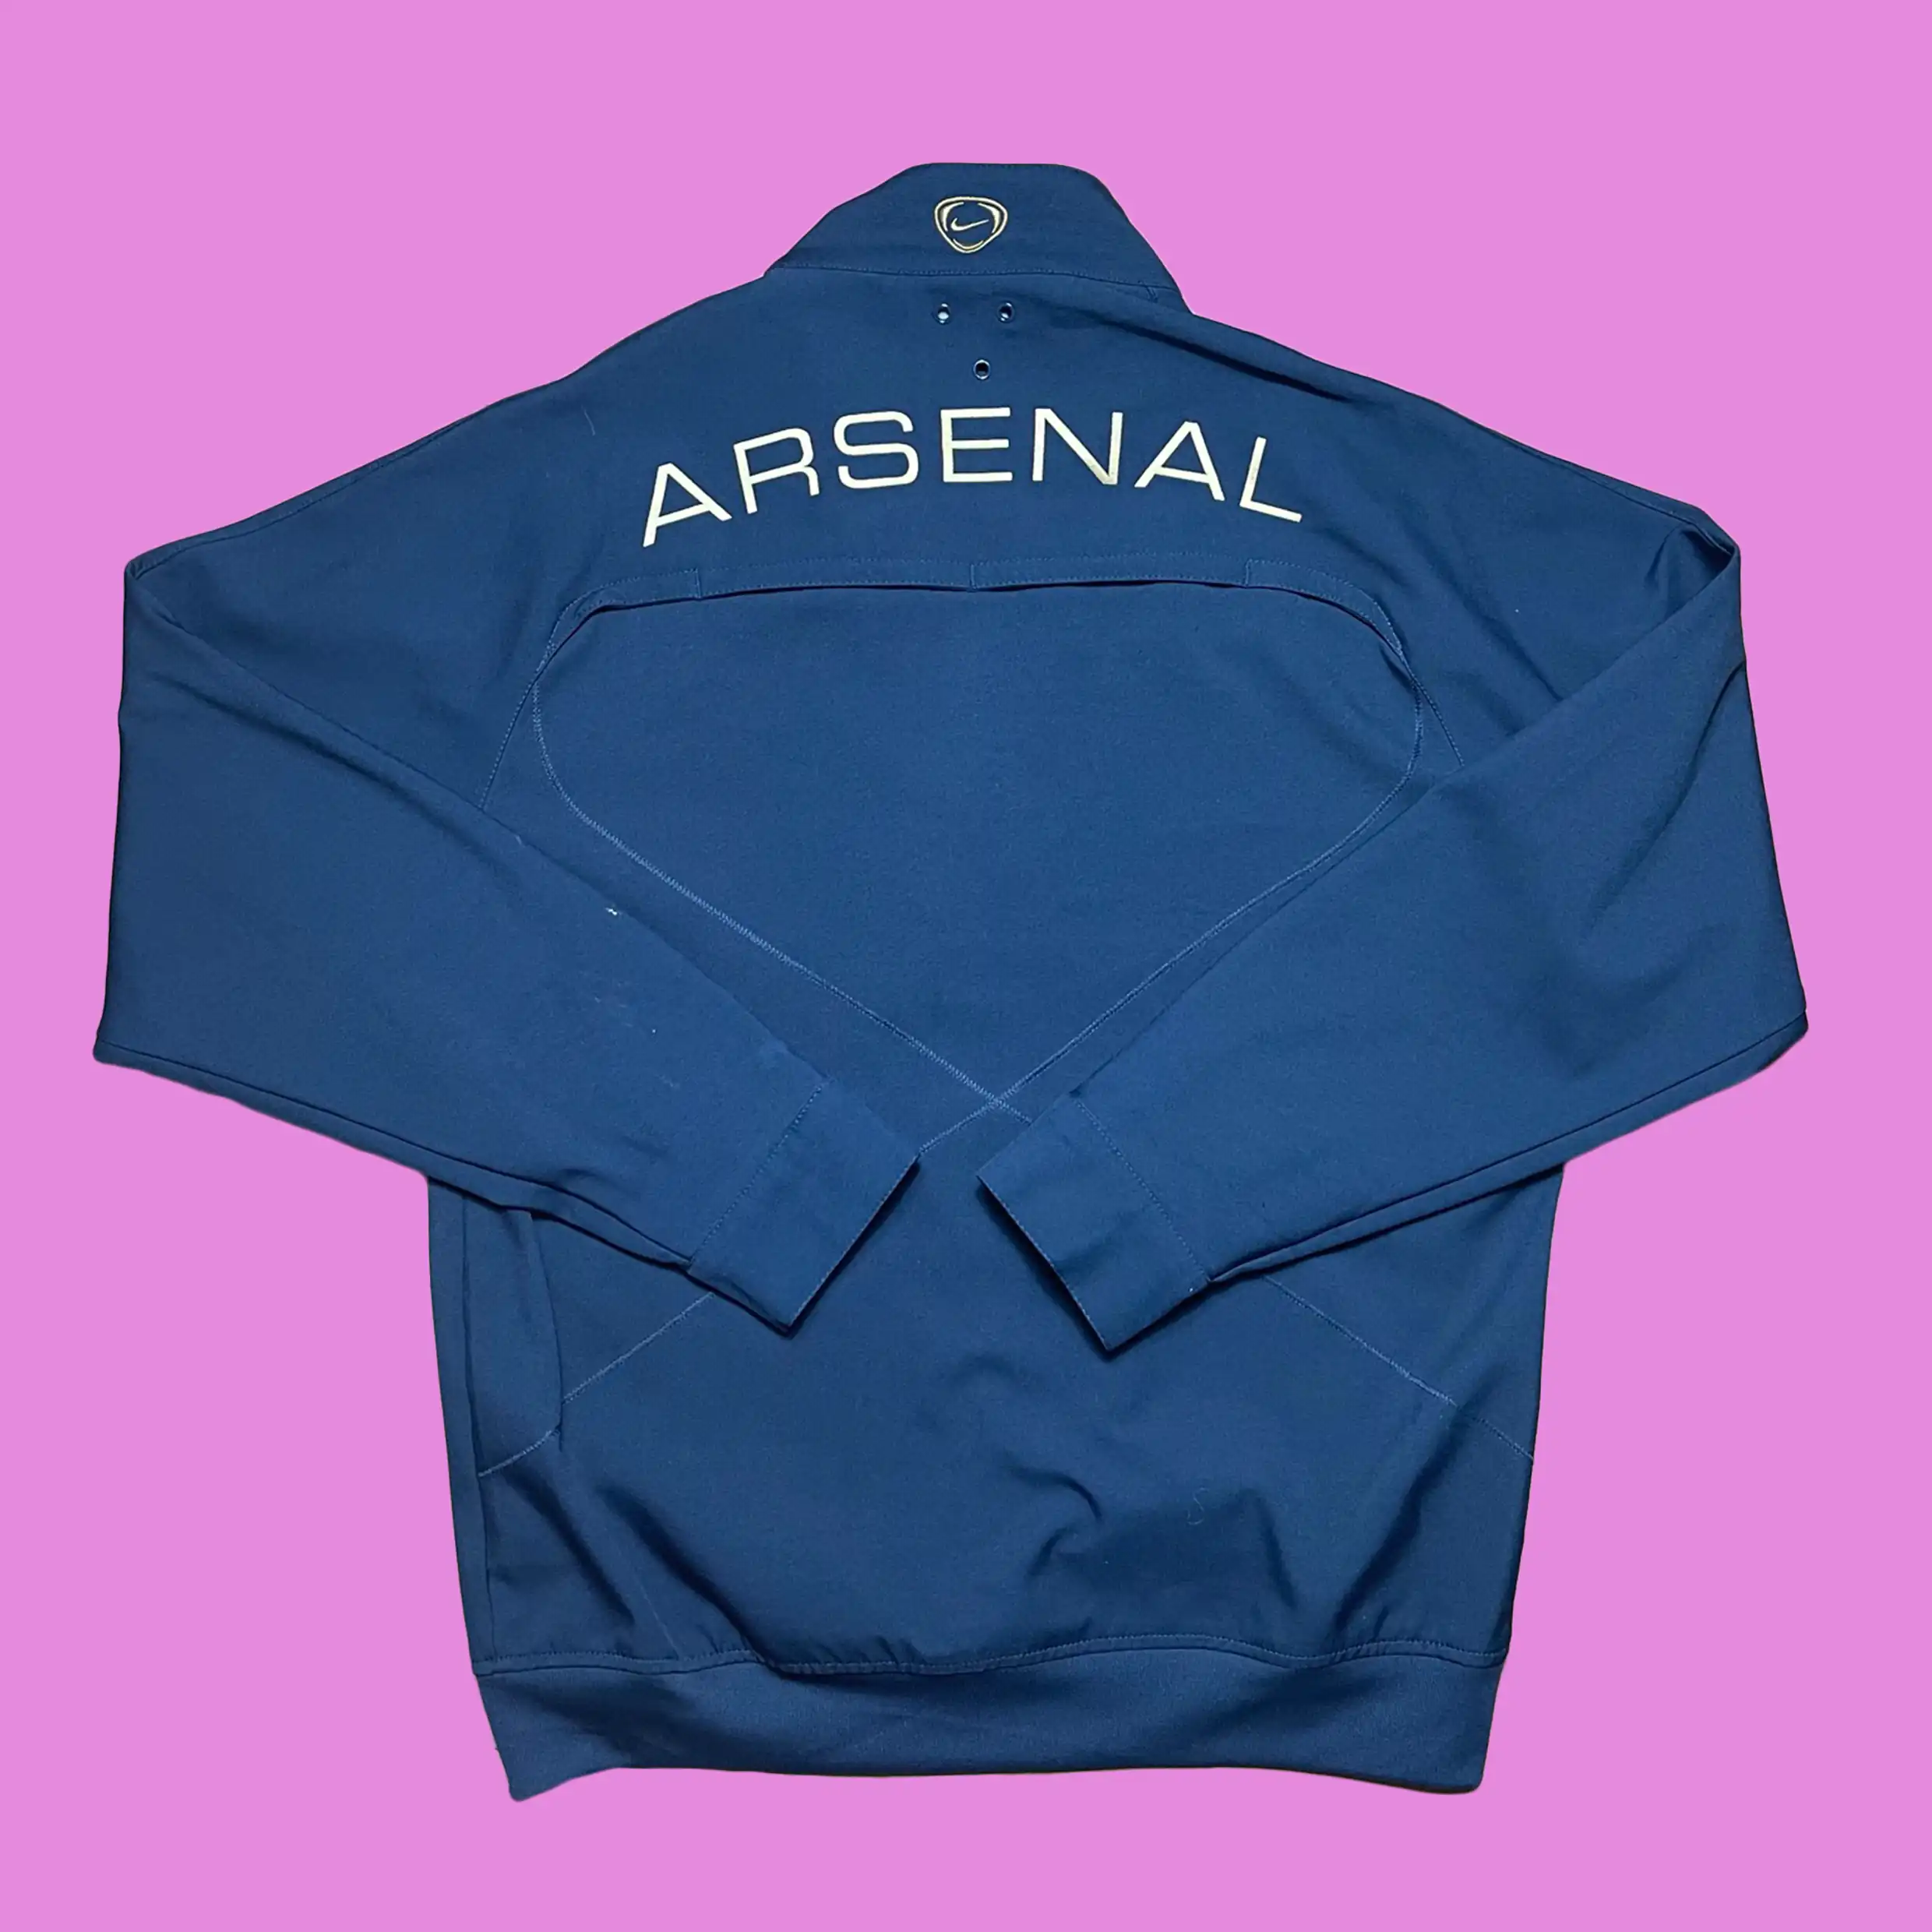 2004/05 ARSENAL Vintage Nike Football Track Top Jacket (S/M) – Cult Football